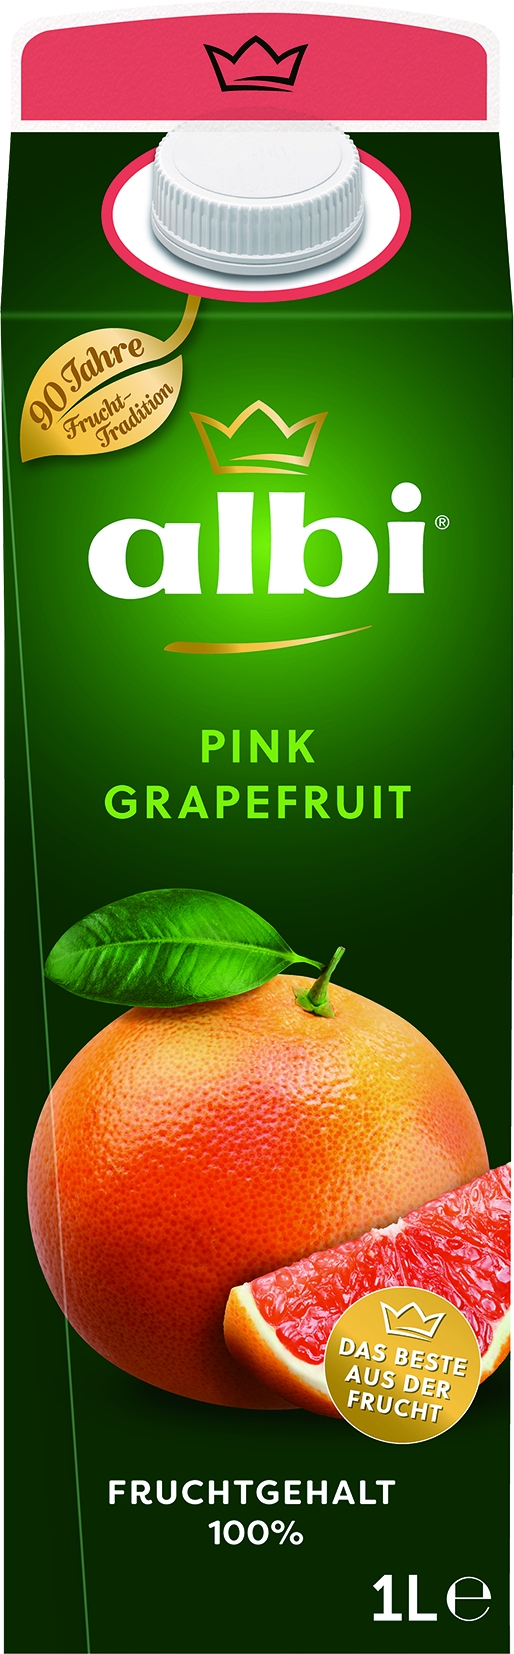 Pink Grapefruit   